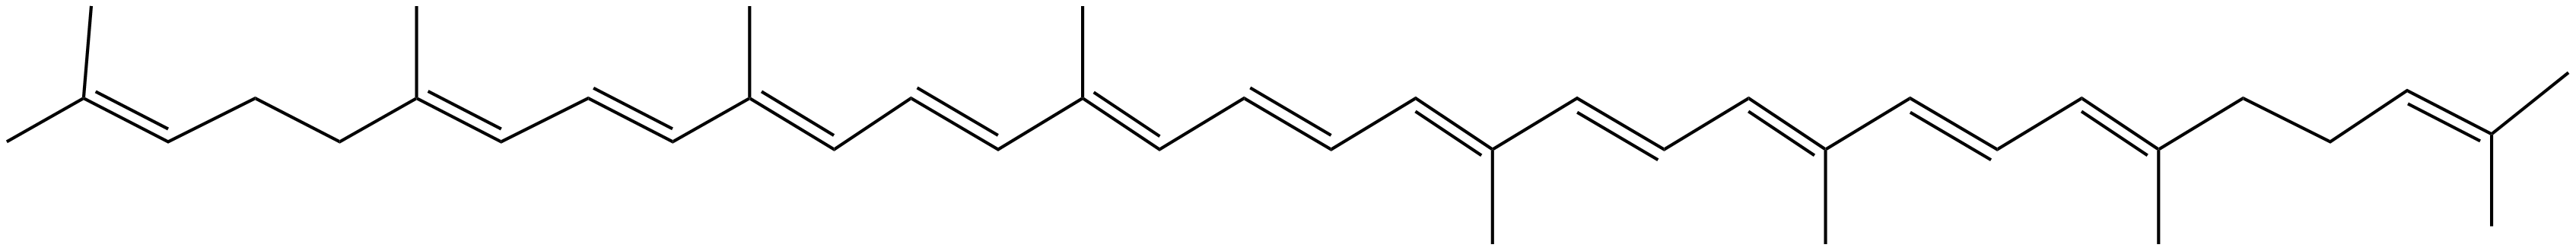 Image of trans-lycopene